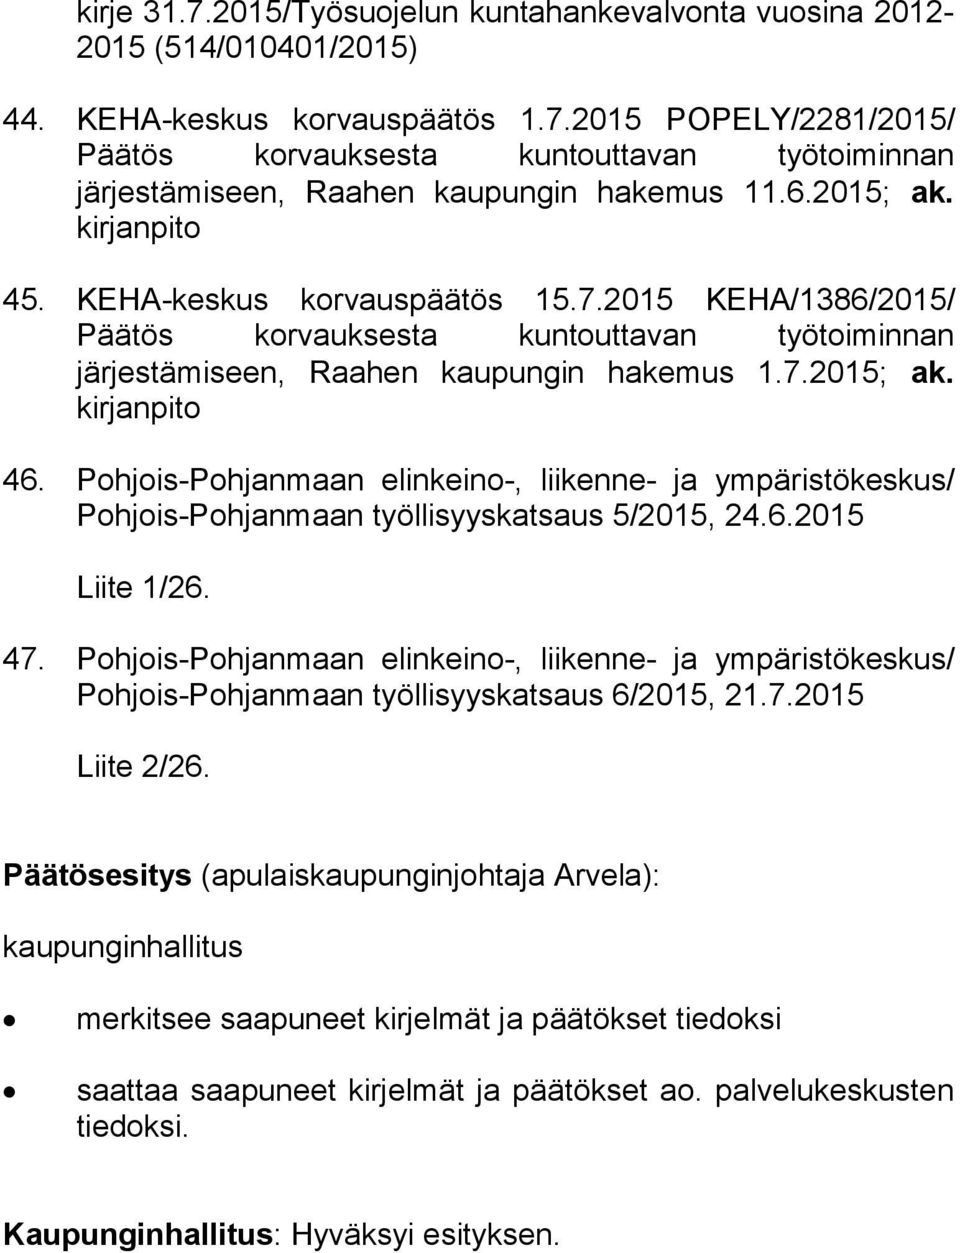 Pohjois-Pohjanmaan elinkeino-, liikenne- ja ympäristökeskus/ Poh jois-poh jan maan työllisyyskatsaus 5/2015, 24.6.2015 Liite 1/26. 47.